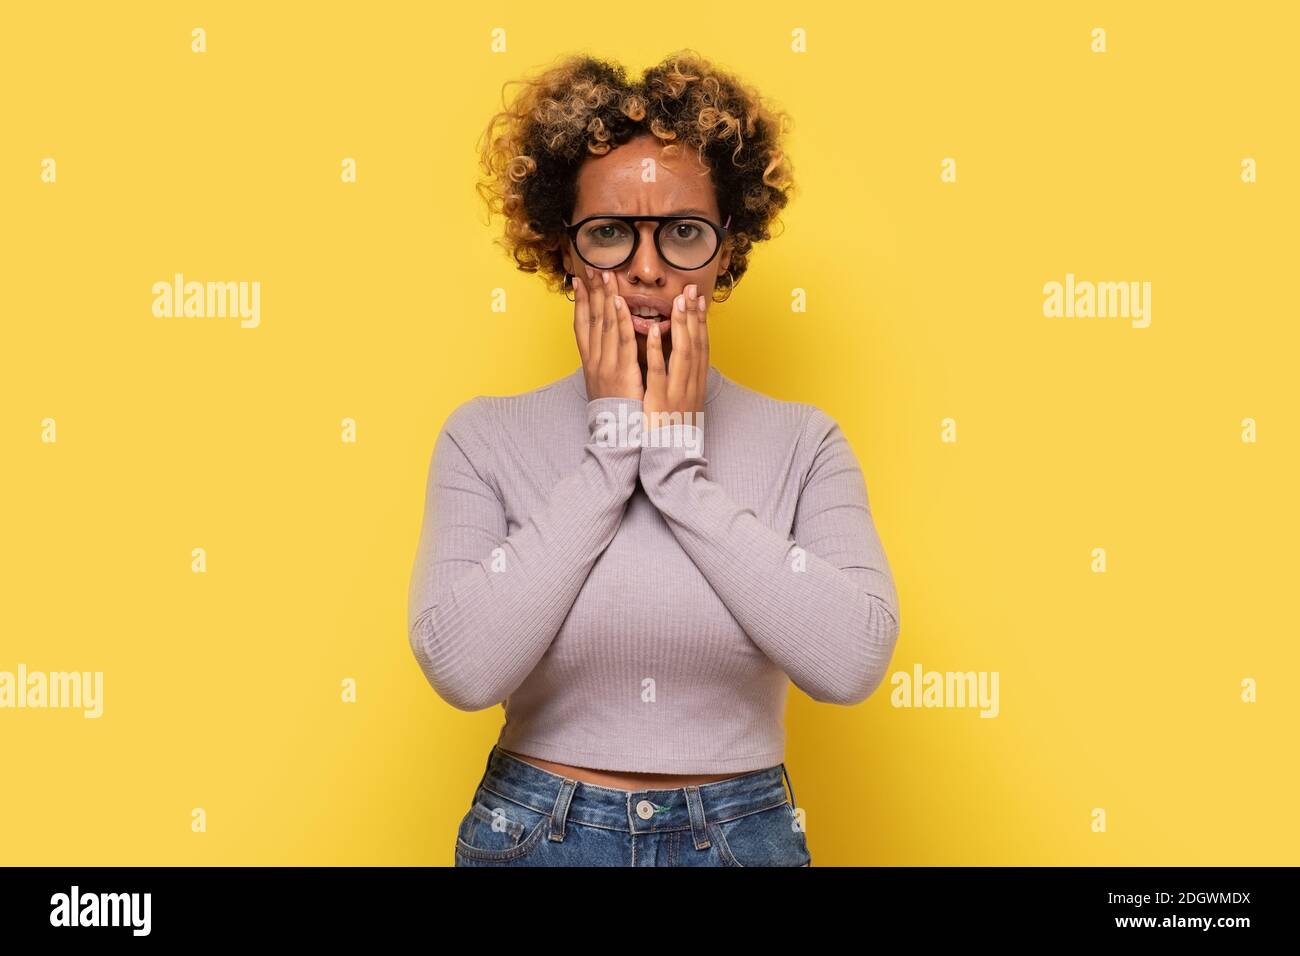 La giovane donna afro-americana pensierosa tiene il mento, sembra perplesso da parte, contempla qualcosa. Studio girato su parete gialla. Foto Stock